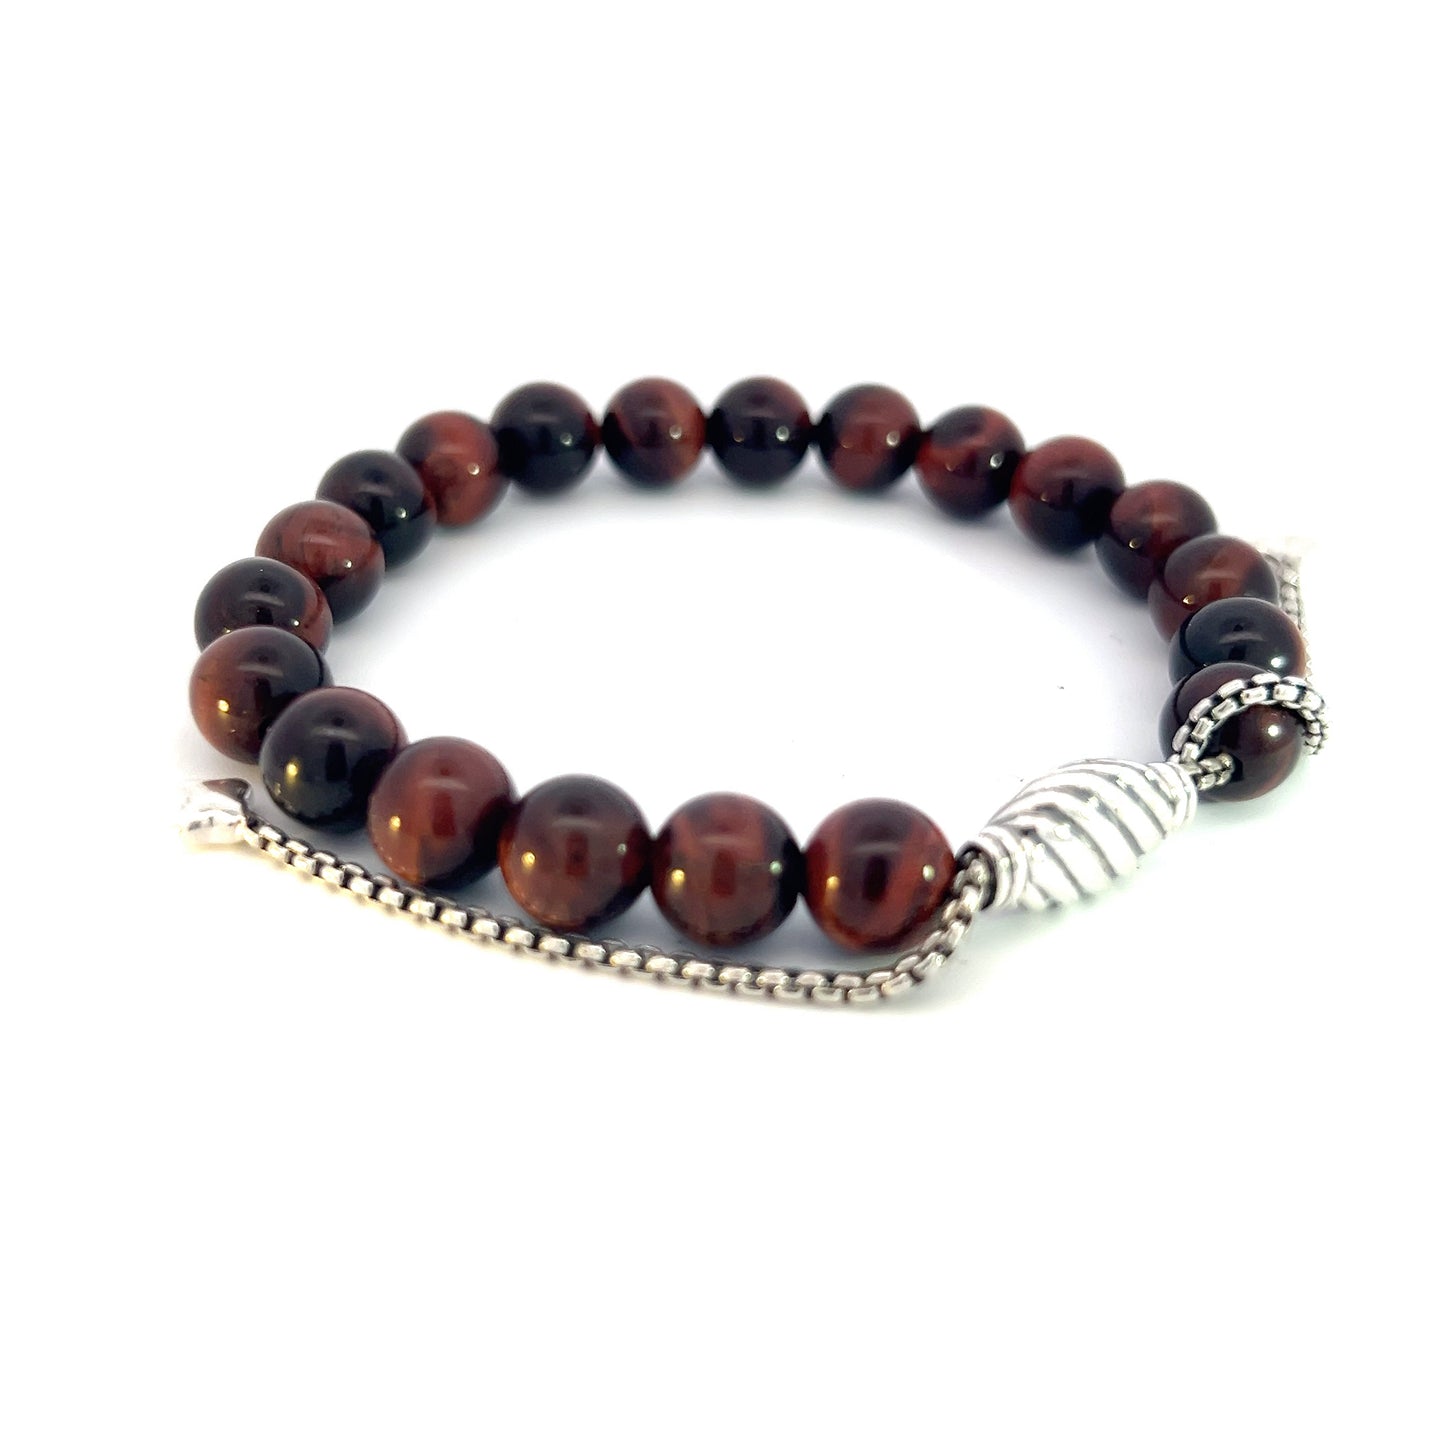 David Yurman Authentic Estate Tiger Eye Spiritual Beads Bracelet 6.6 - 8.5" Silver 8 mm DY453